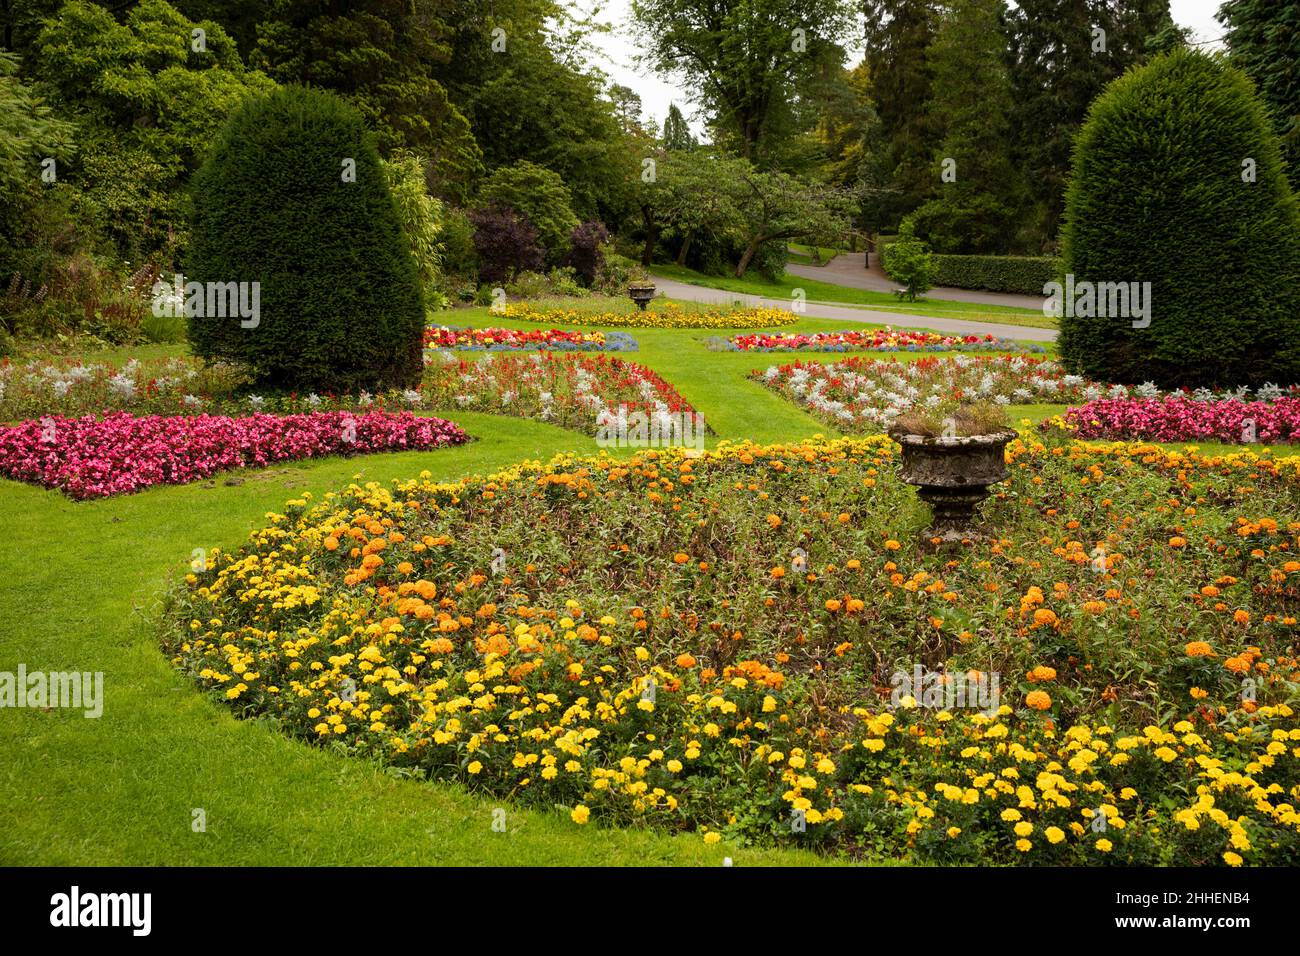 Reino Unido, Gales, Merthyr Tydfil, Cyfartha Castle Park, coloridos lechos de flores Foto de stock